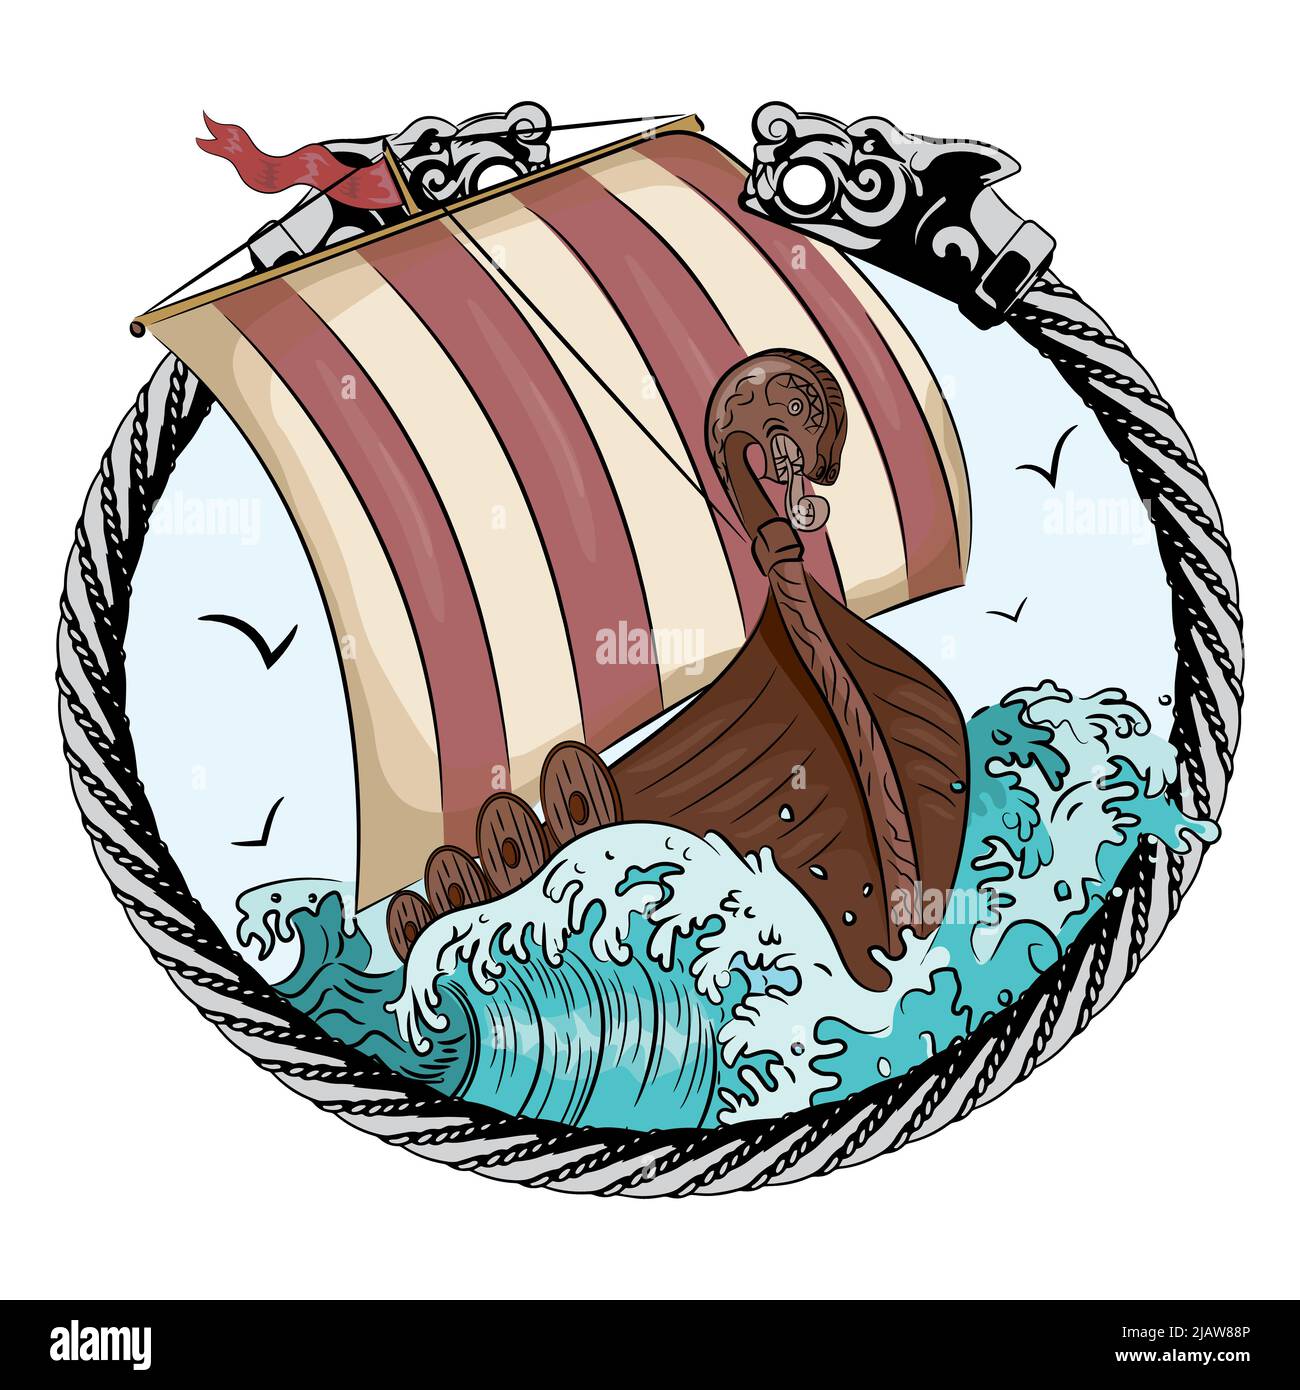 Drakkar vela sul mare tempestoso nella cornice della corona scandinava con una testa di lupo Illustrazione Vettoriale